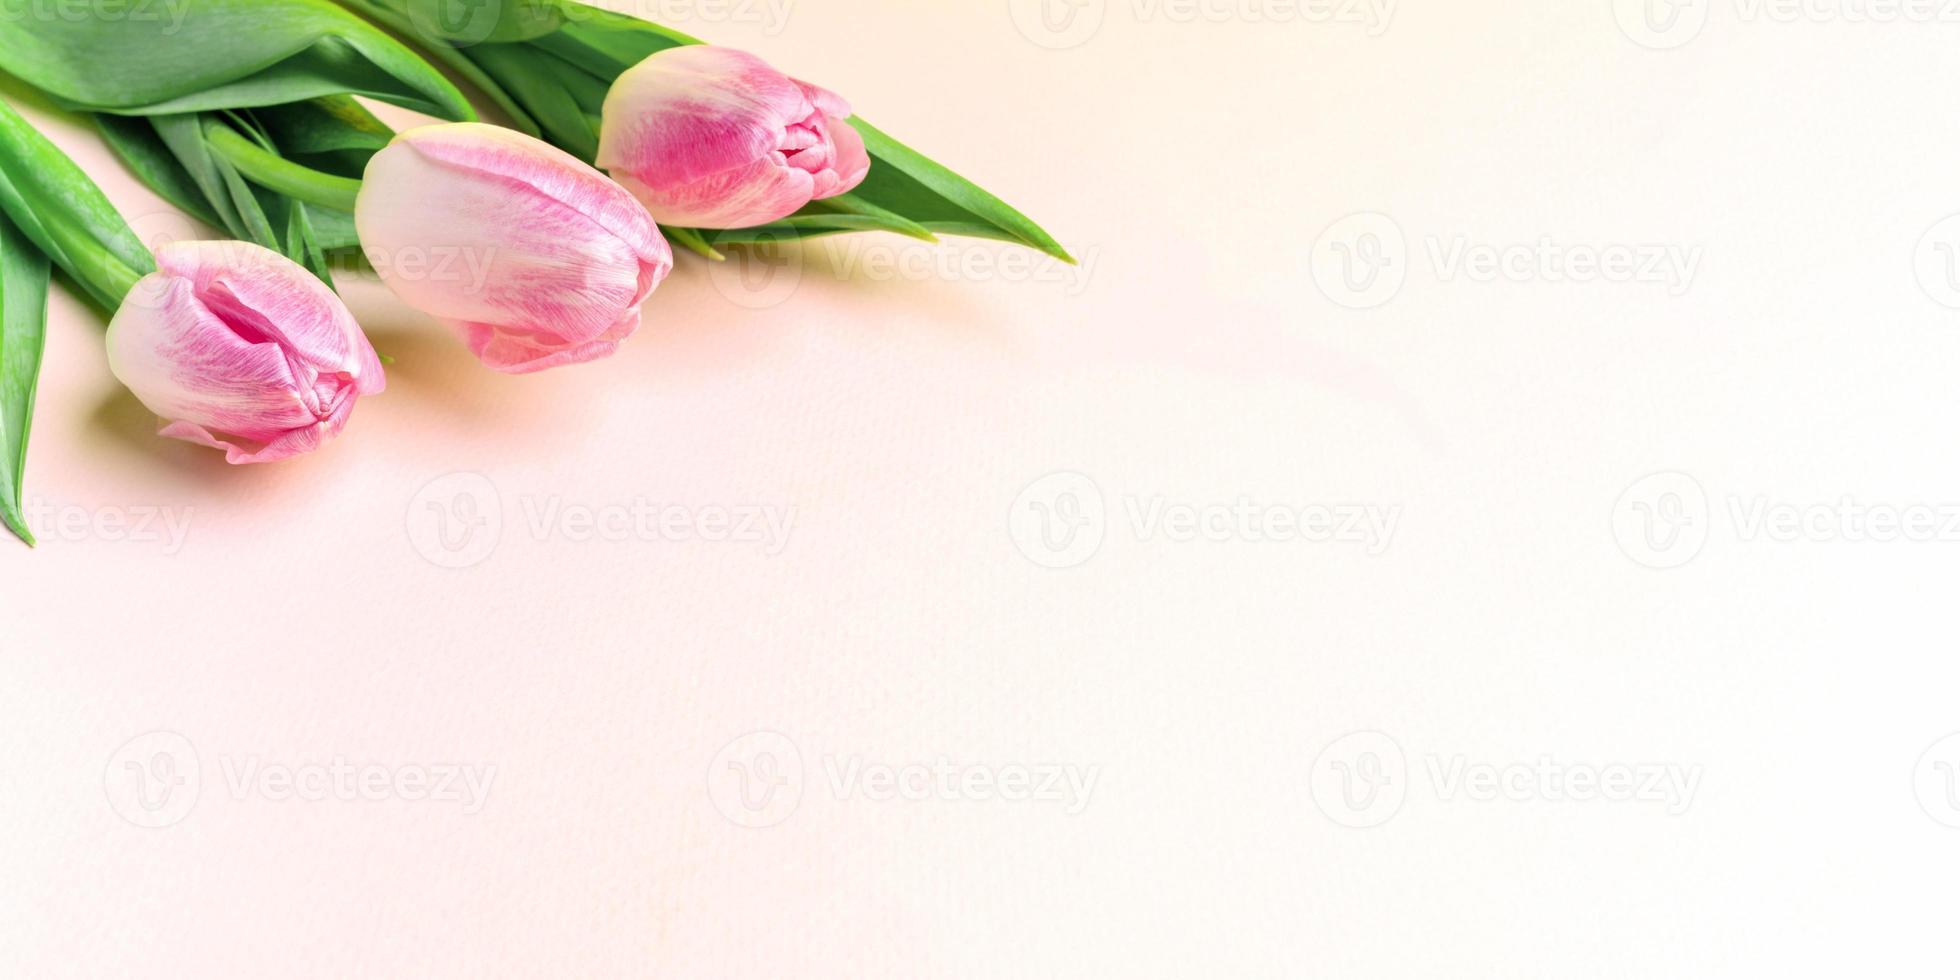 bannière de printemps festive avec des tulipes roses fraîches sur rose pastel. espace de copie. photo